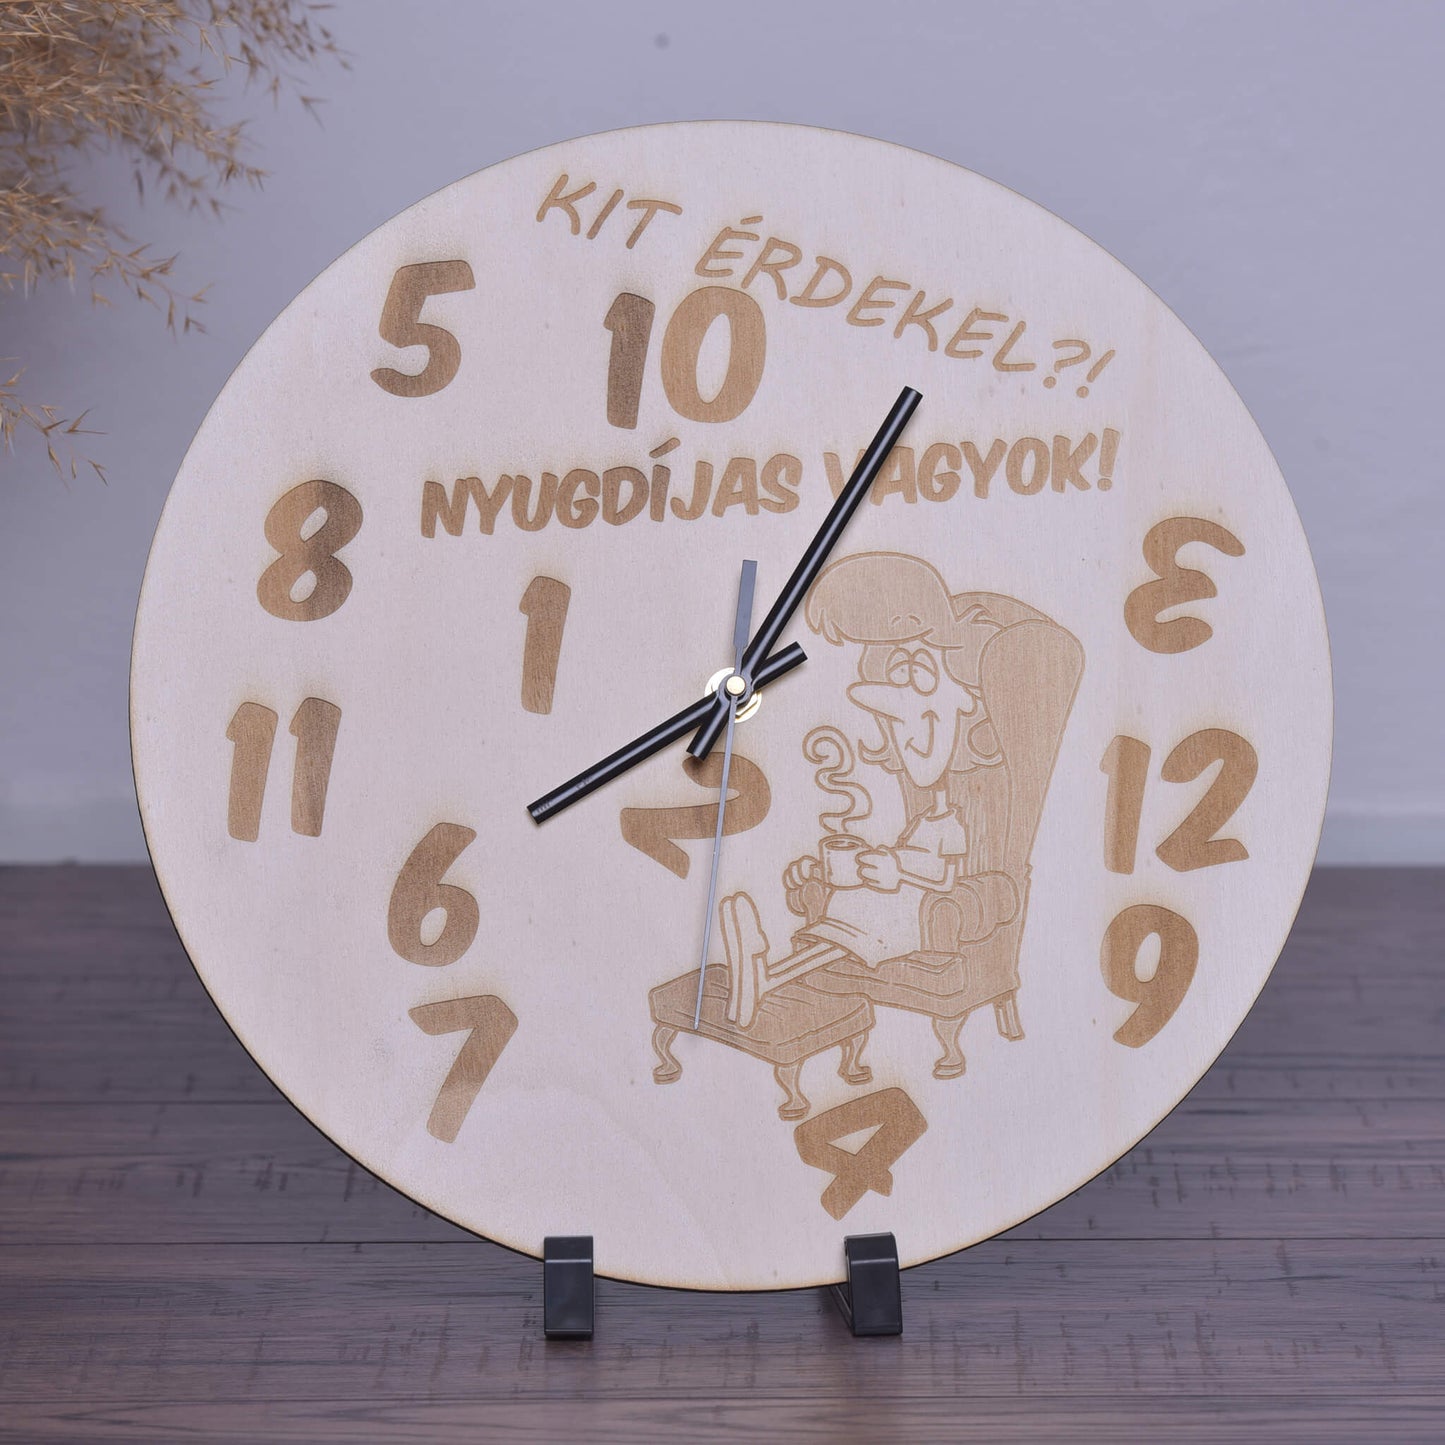 Kit érdekel nyugdíjas vagyok - női - wooden engraved wall clock - rvdesignprint